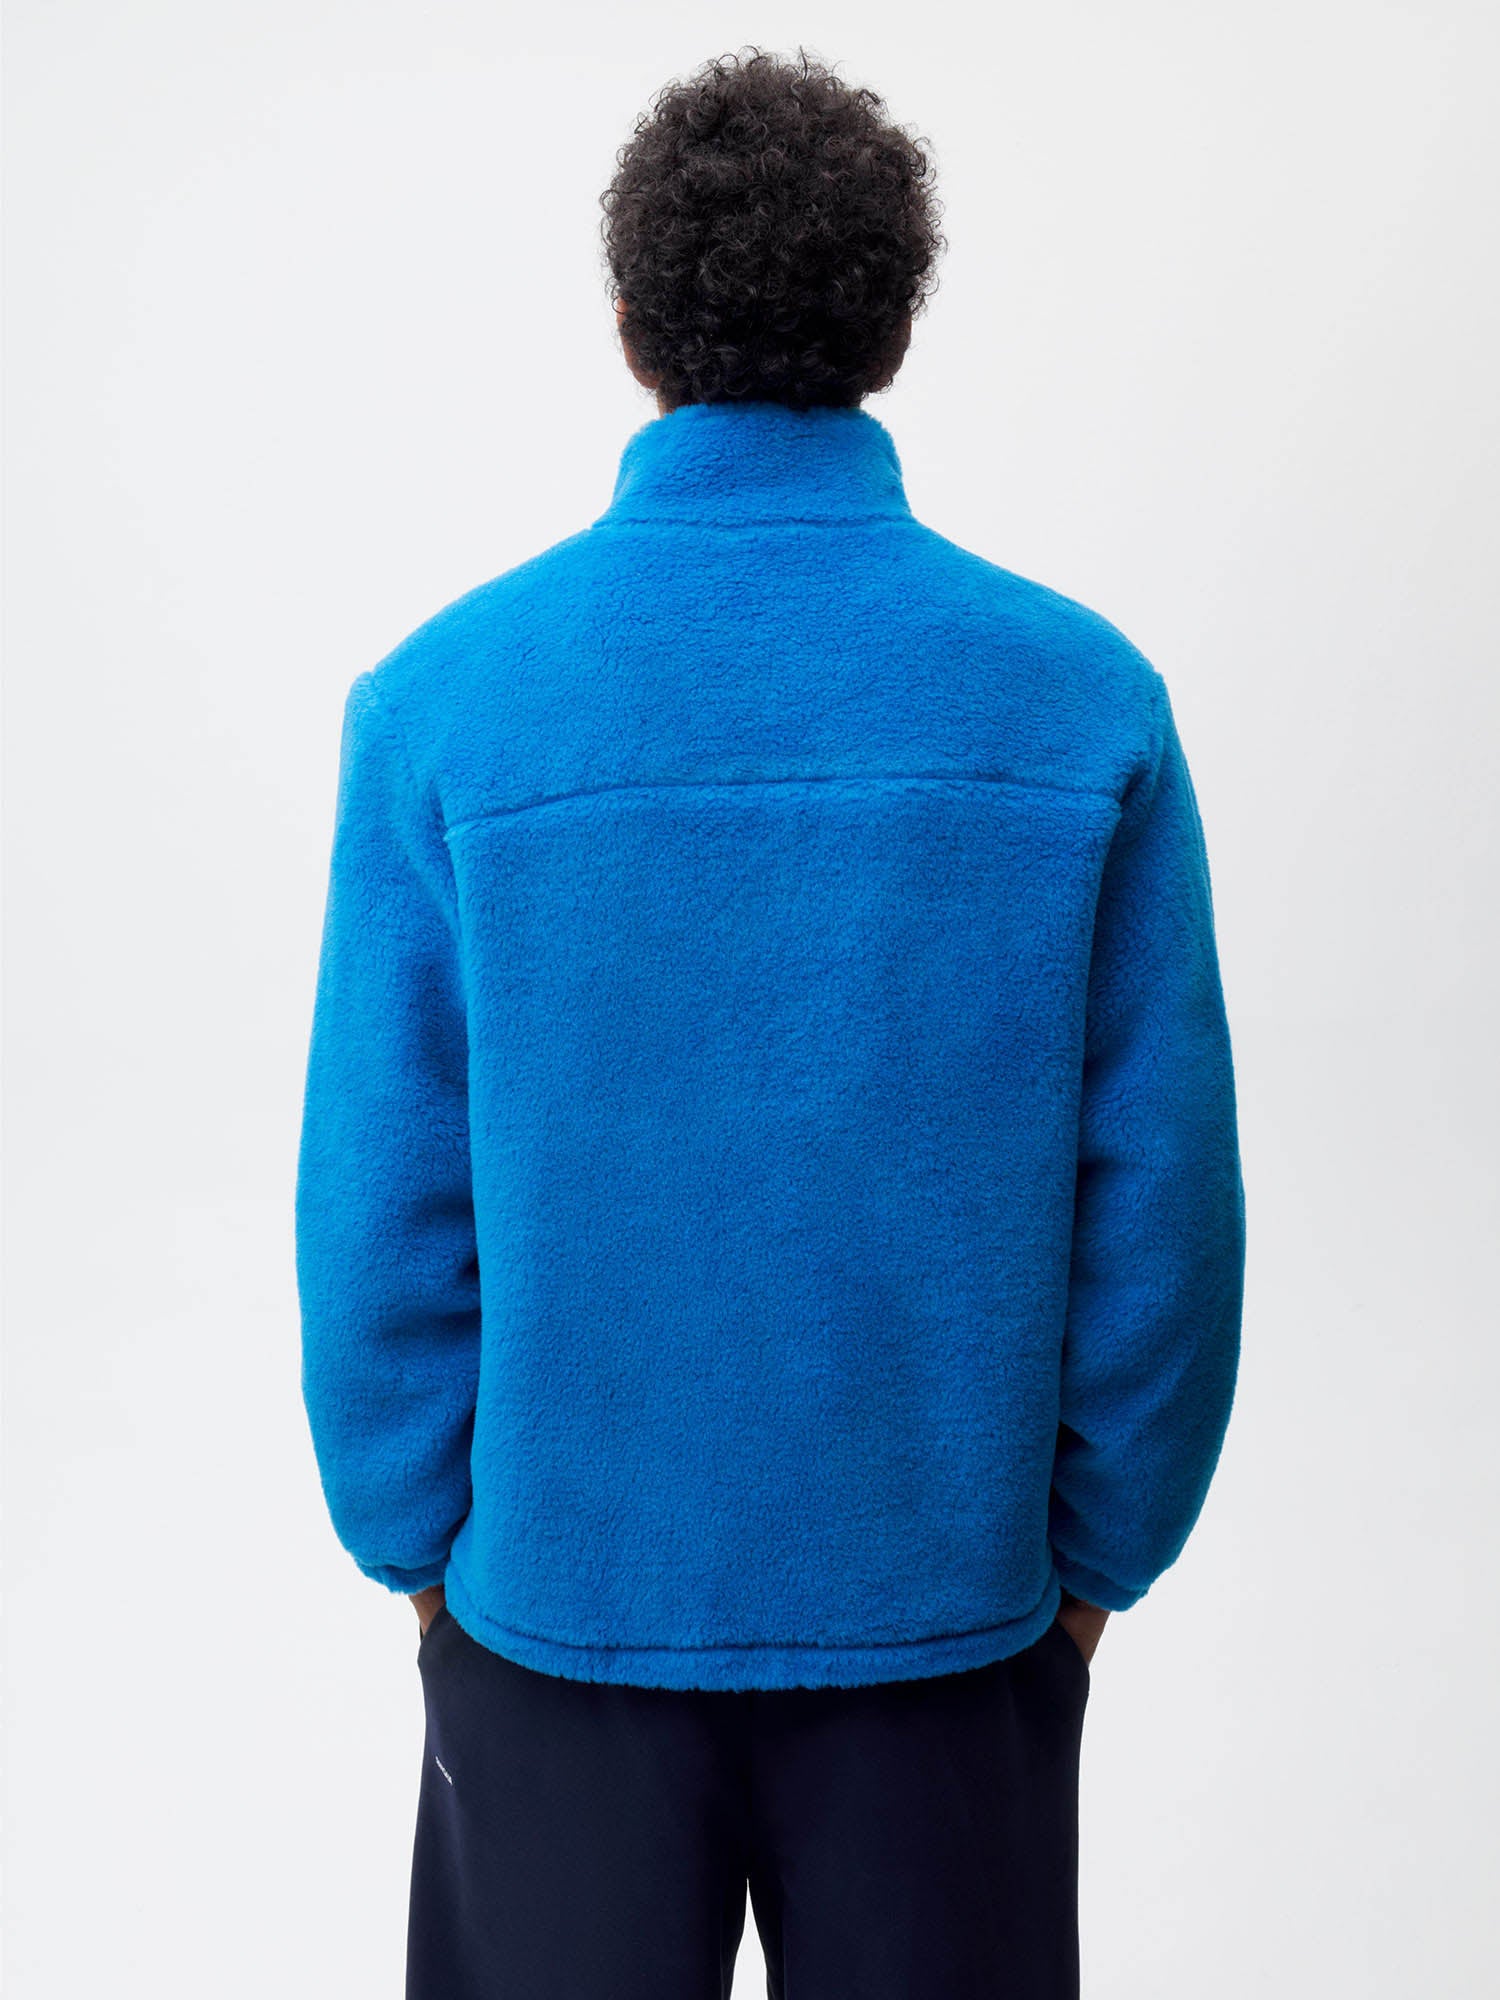 Recycled Wool Fleece Jacket—cerulean blue male